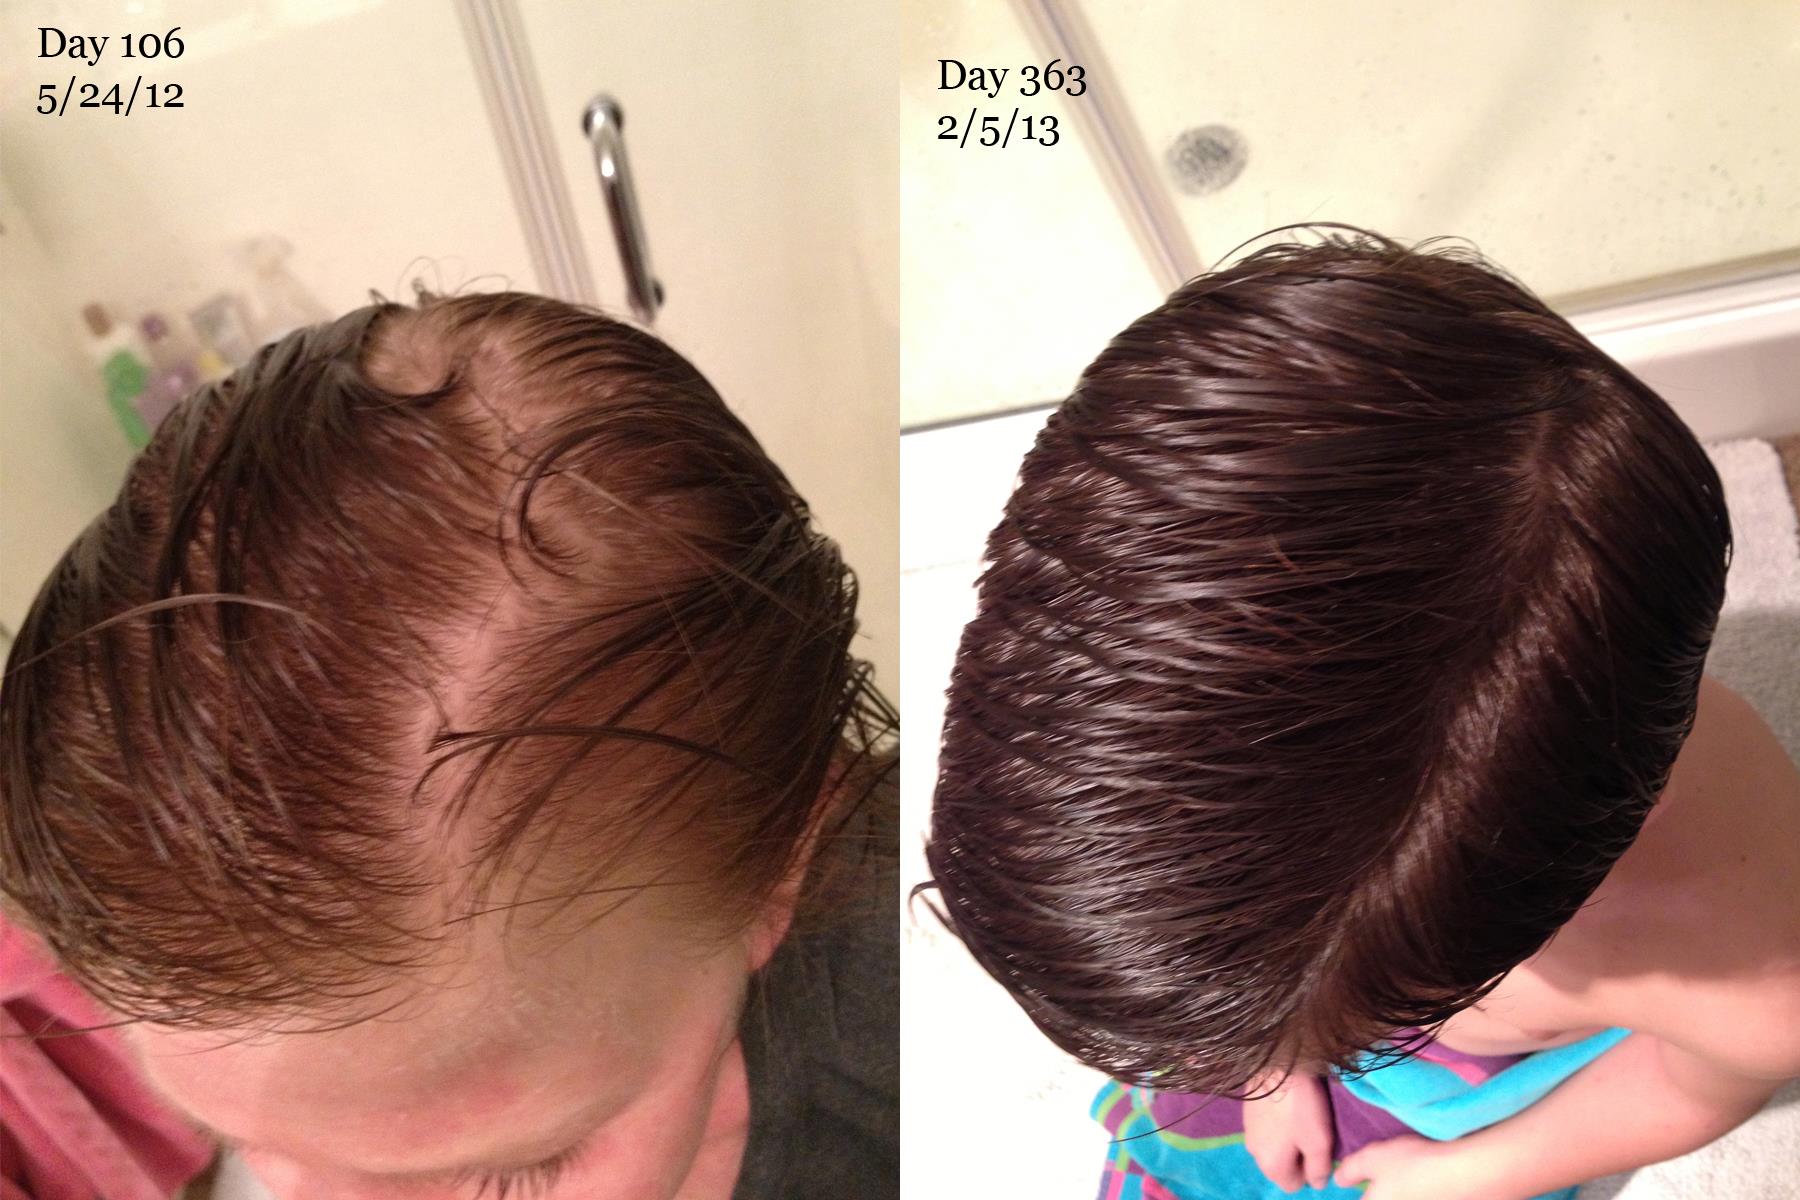 Как восстановить рост волос